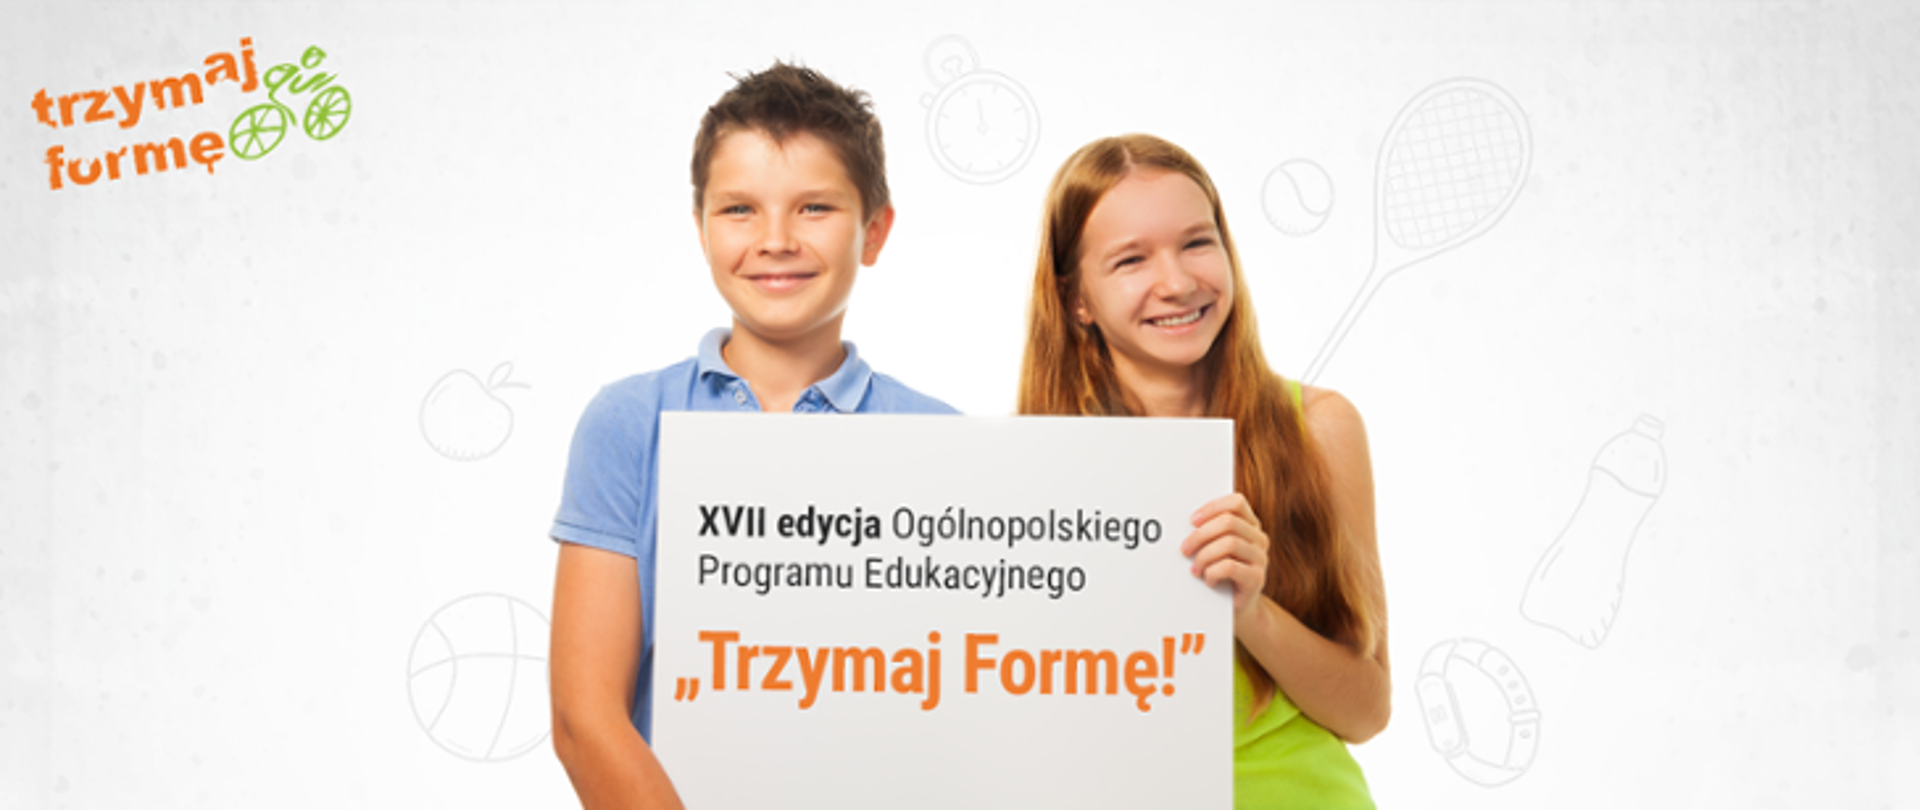 Dwoje dzieci, chłopak i dziewczyna trzymają w rekach baner z napisem "XVII edycja Ogólnopolskiego Programu Edukacyjnego "Trzymaj Formę!" 